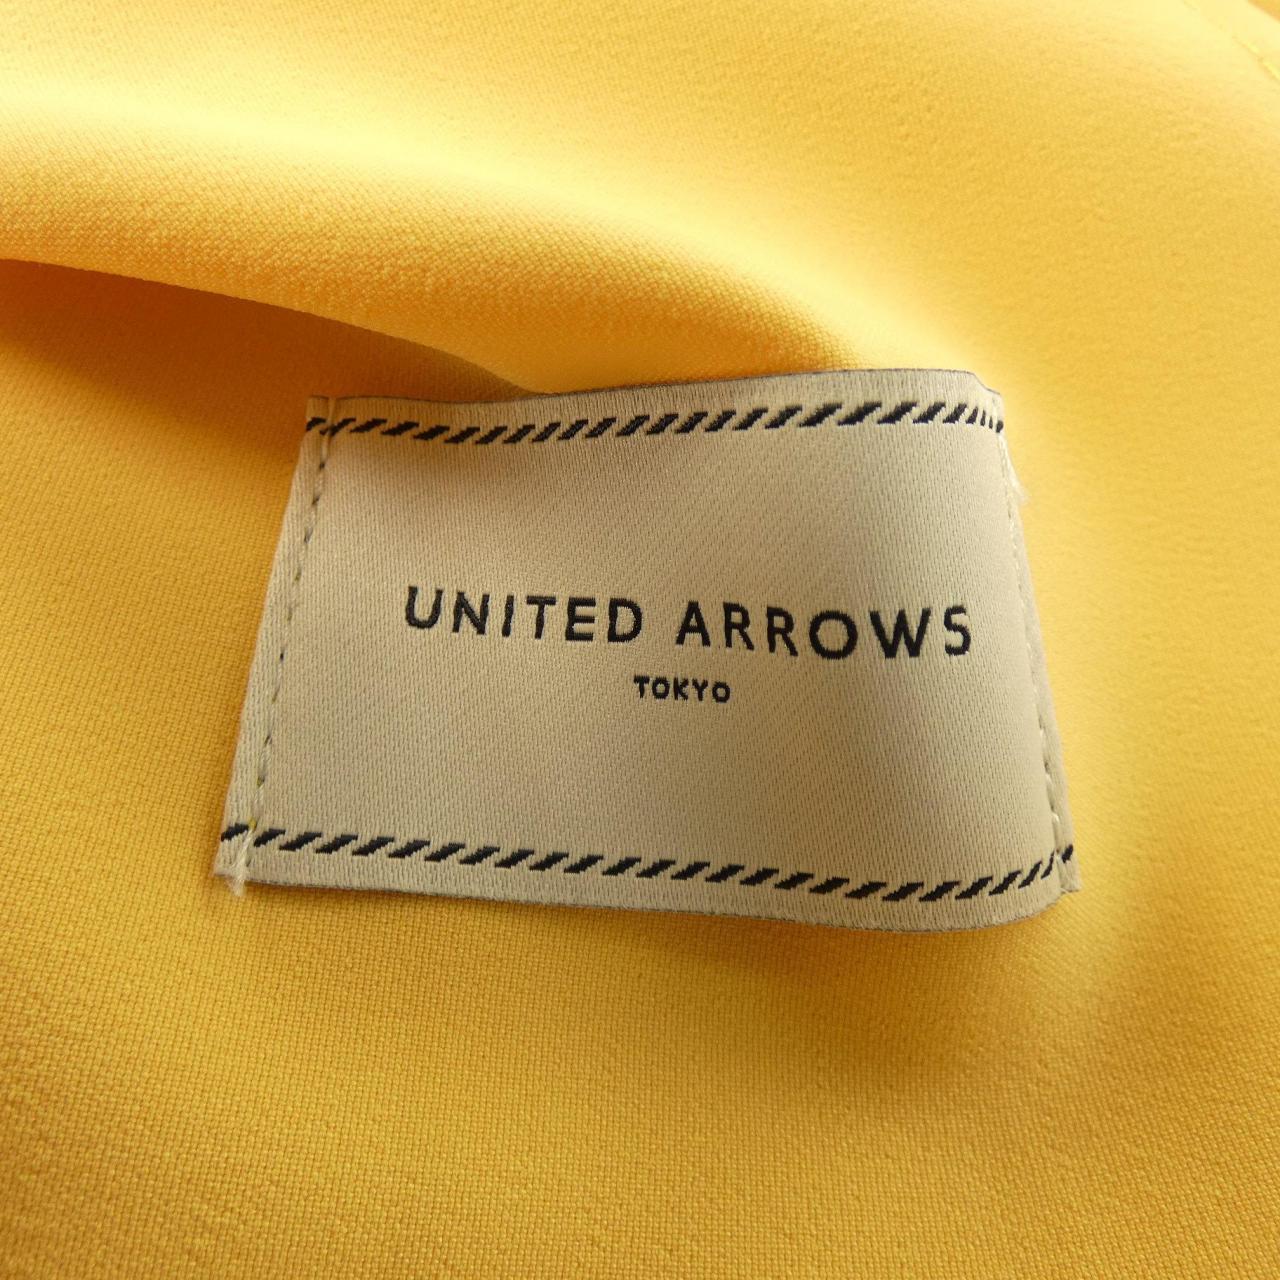 UNITED ARROWS褲子